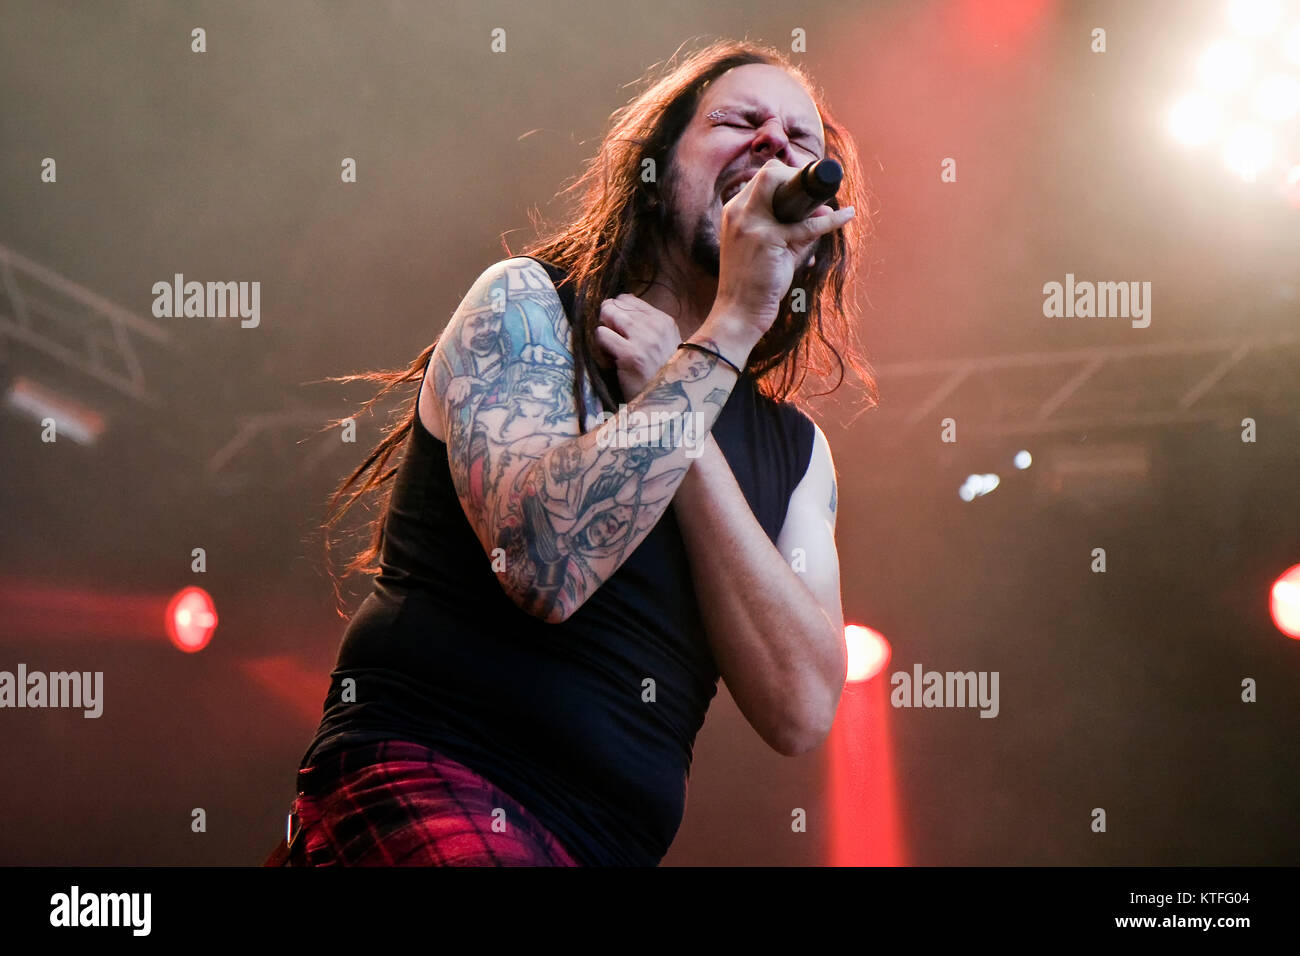 La American heavy metal band Korn (stilizzata KoЯn) esegue un concerto dal vivo a Youngstorget in Oslo. Qui cantante Jonathan Davis è visto dal vivo sul palco. Norvegia, 16/06 2011. Foto Stock